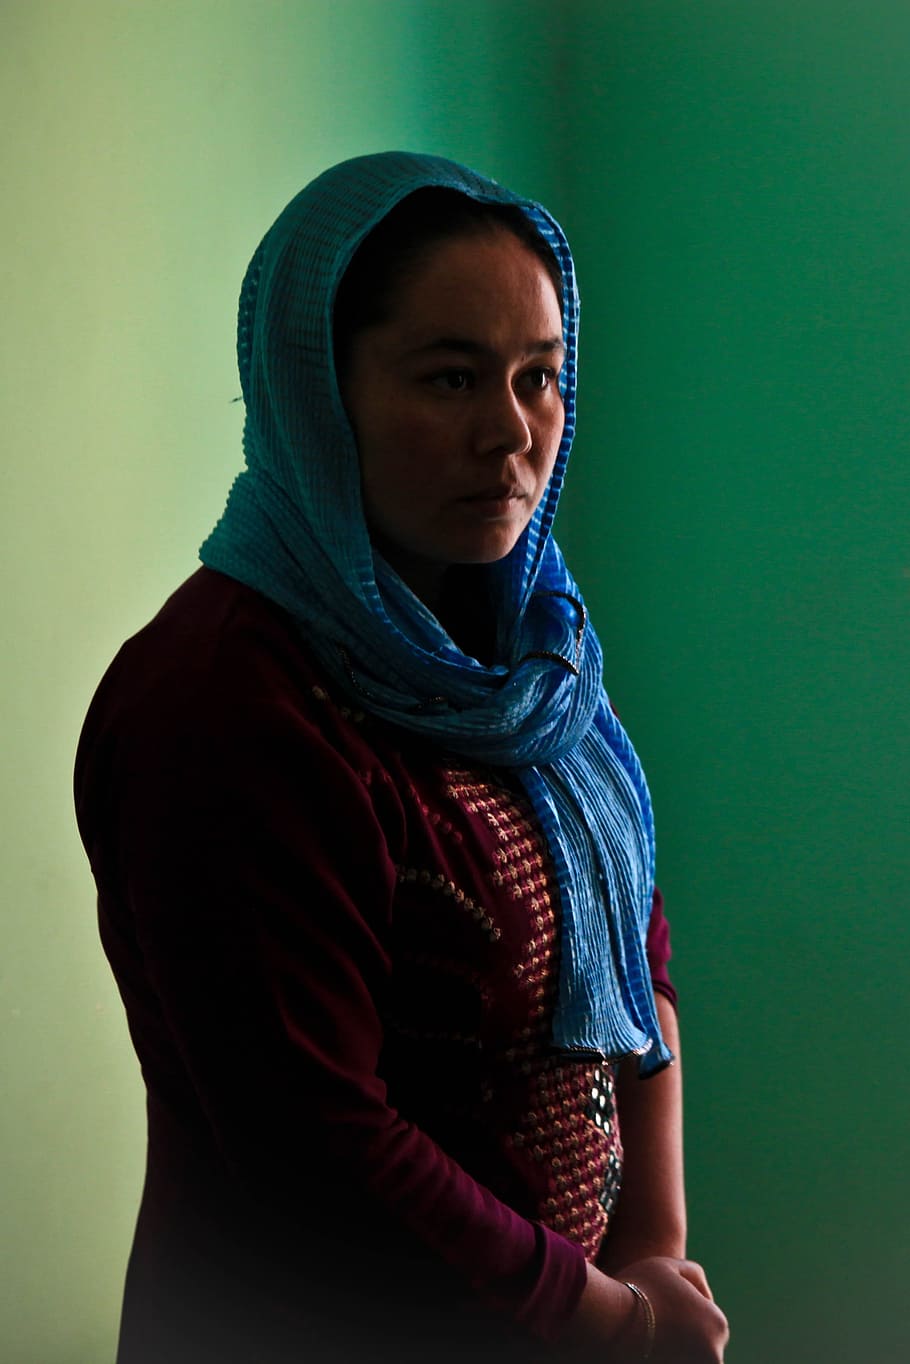 Афганистан, голова, обтекание, женщина, портрет, обтекание головы, застенчивый, ислам, ближневосточная этническая принадлежность, один человек